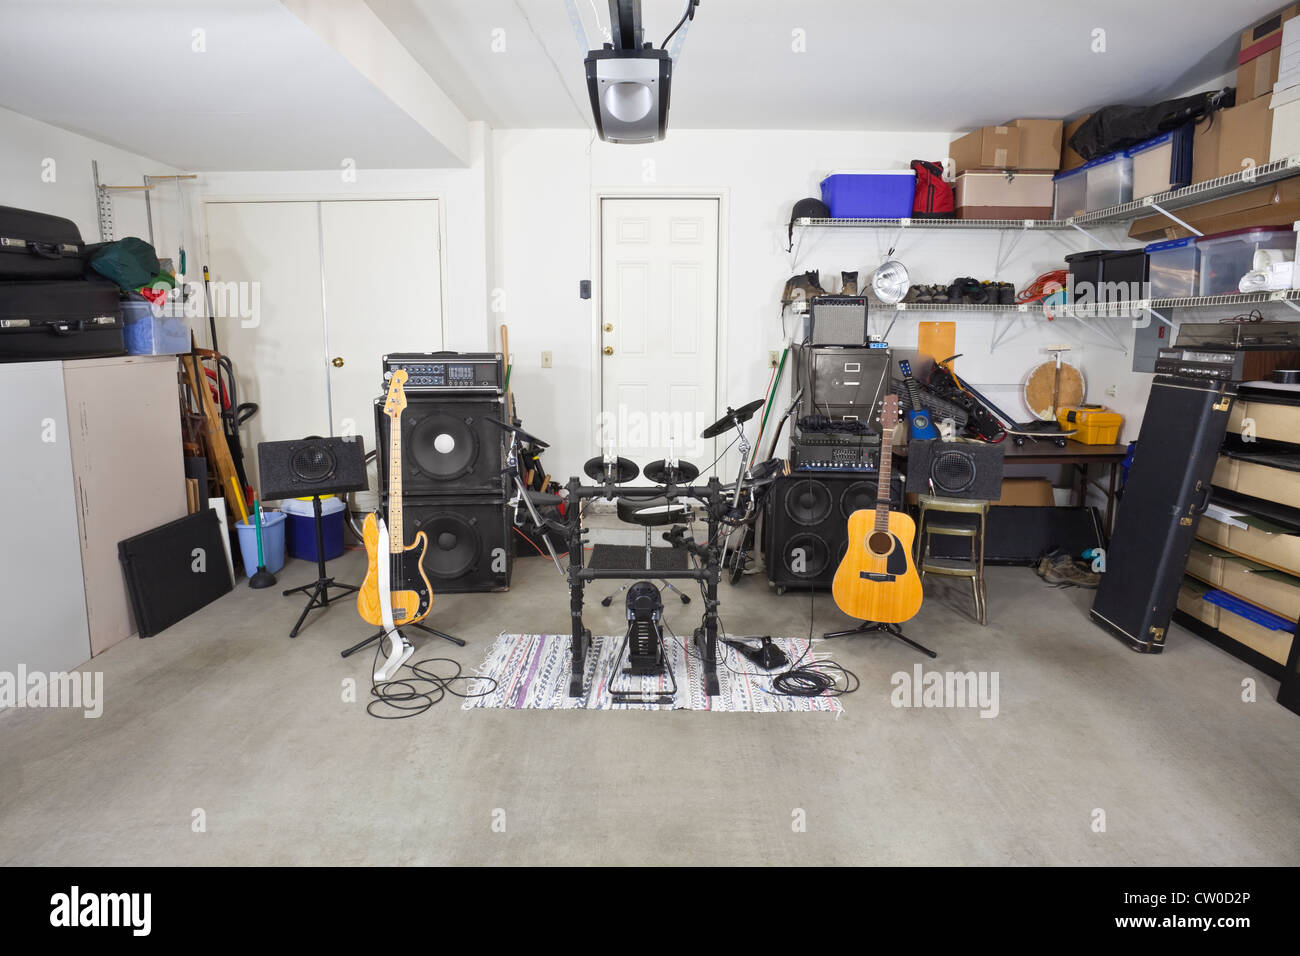 Rock Band-Musik-Equipment in einer unübersichtlichen s Garage. Stockfoto